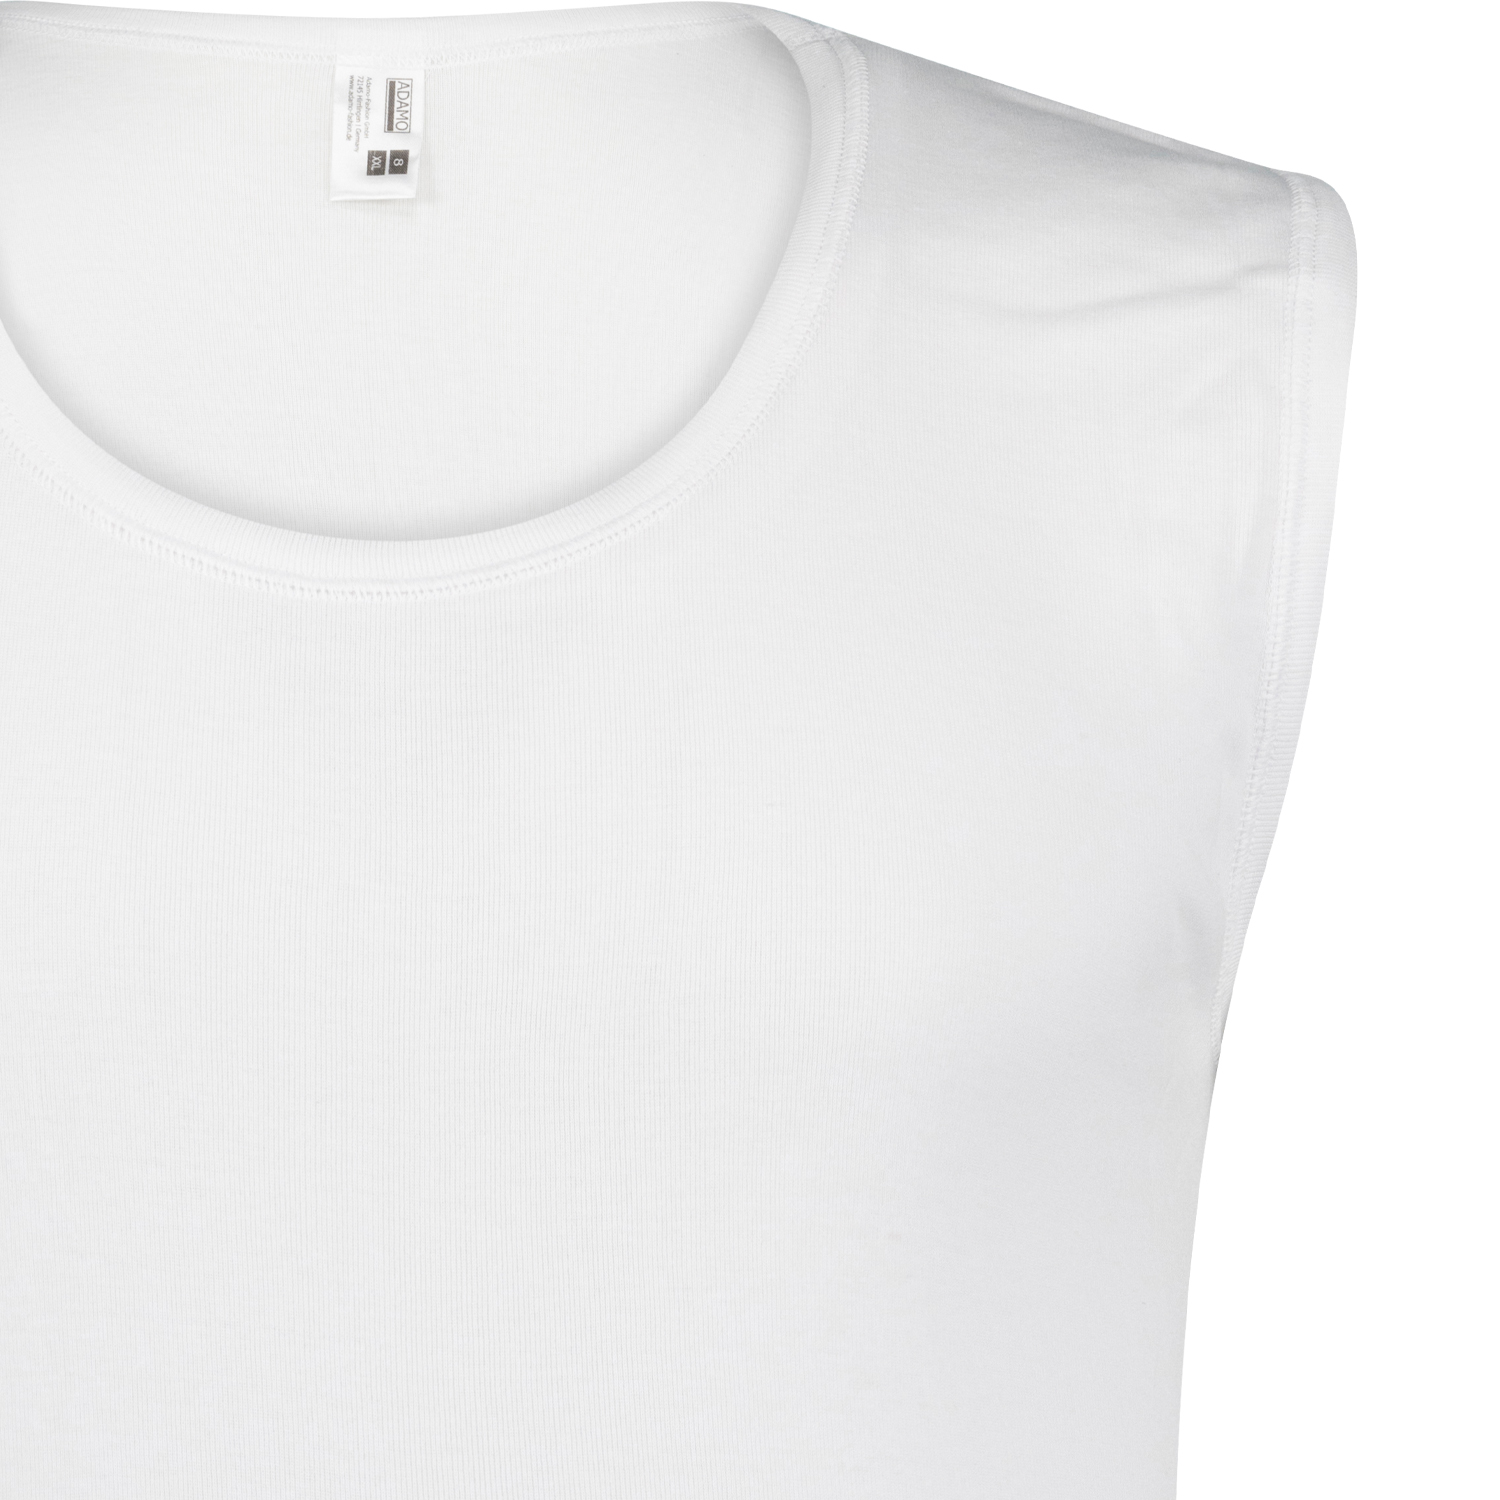 Weißes Cityshirt ohne Arm von ADAMO in großen Größen bis 20